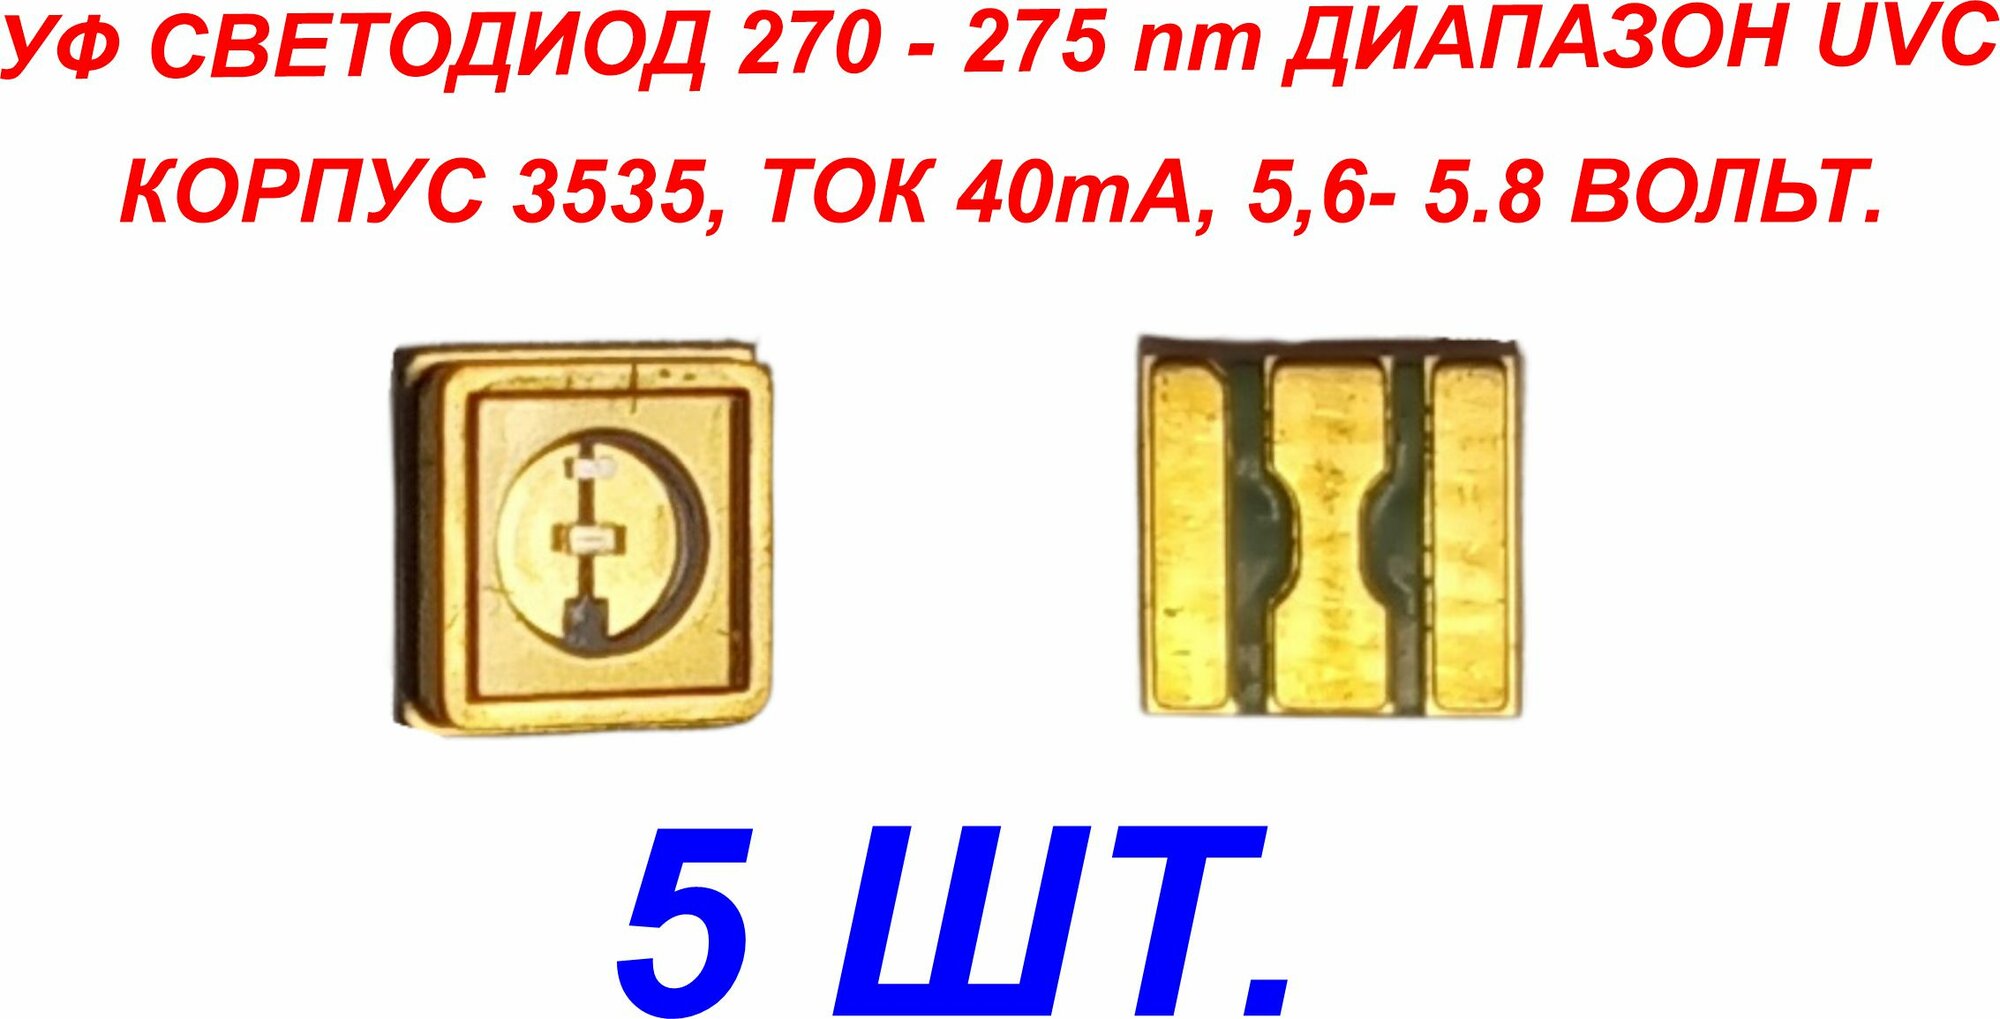 5 шт. УФ ультрафиолетовые светодиоды UVC 5.6-5.8В 40ma 270-275nm (ARL-3535-TWA)